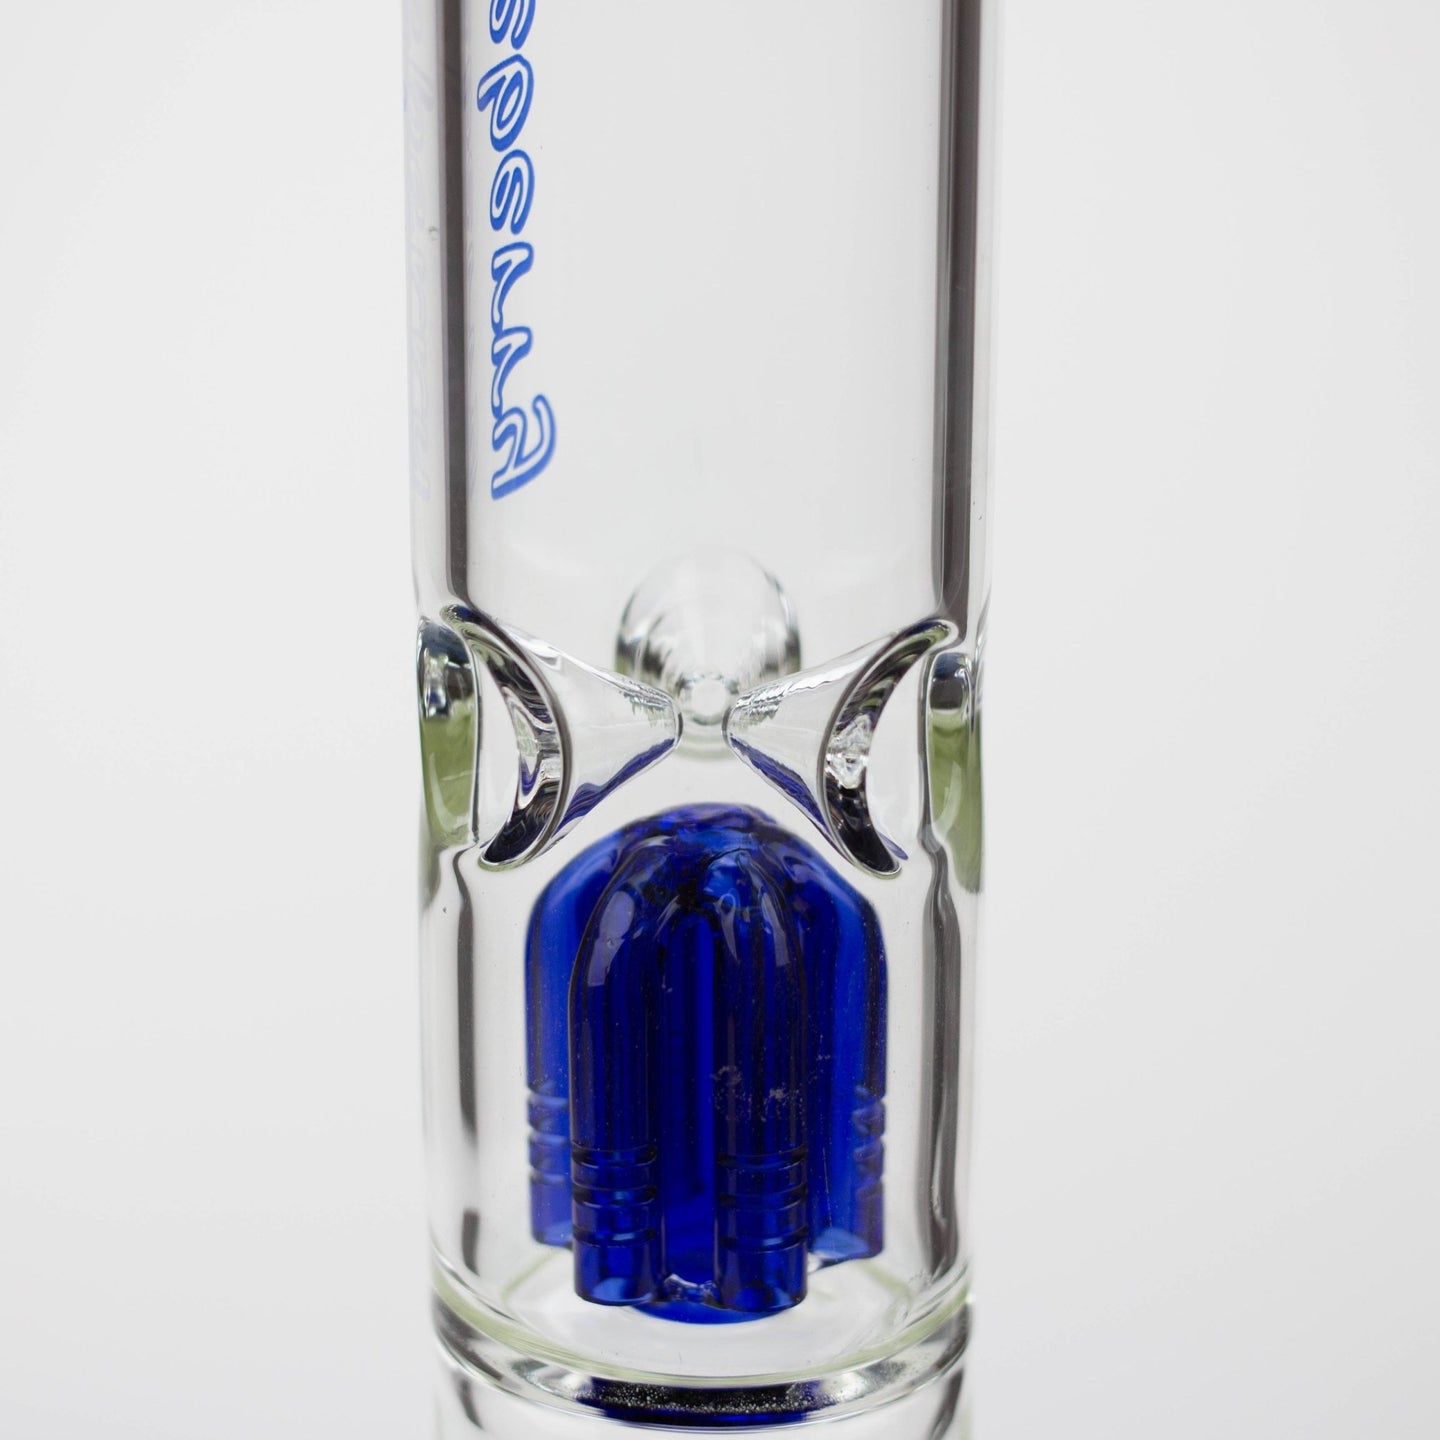 Blueberry-15" Double Tree Perc Beaker Bong - Glasss Station